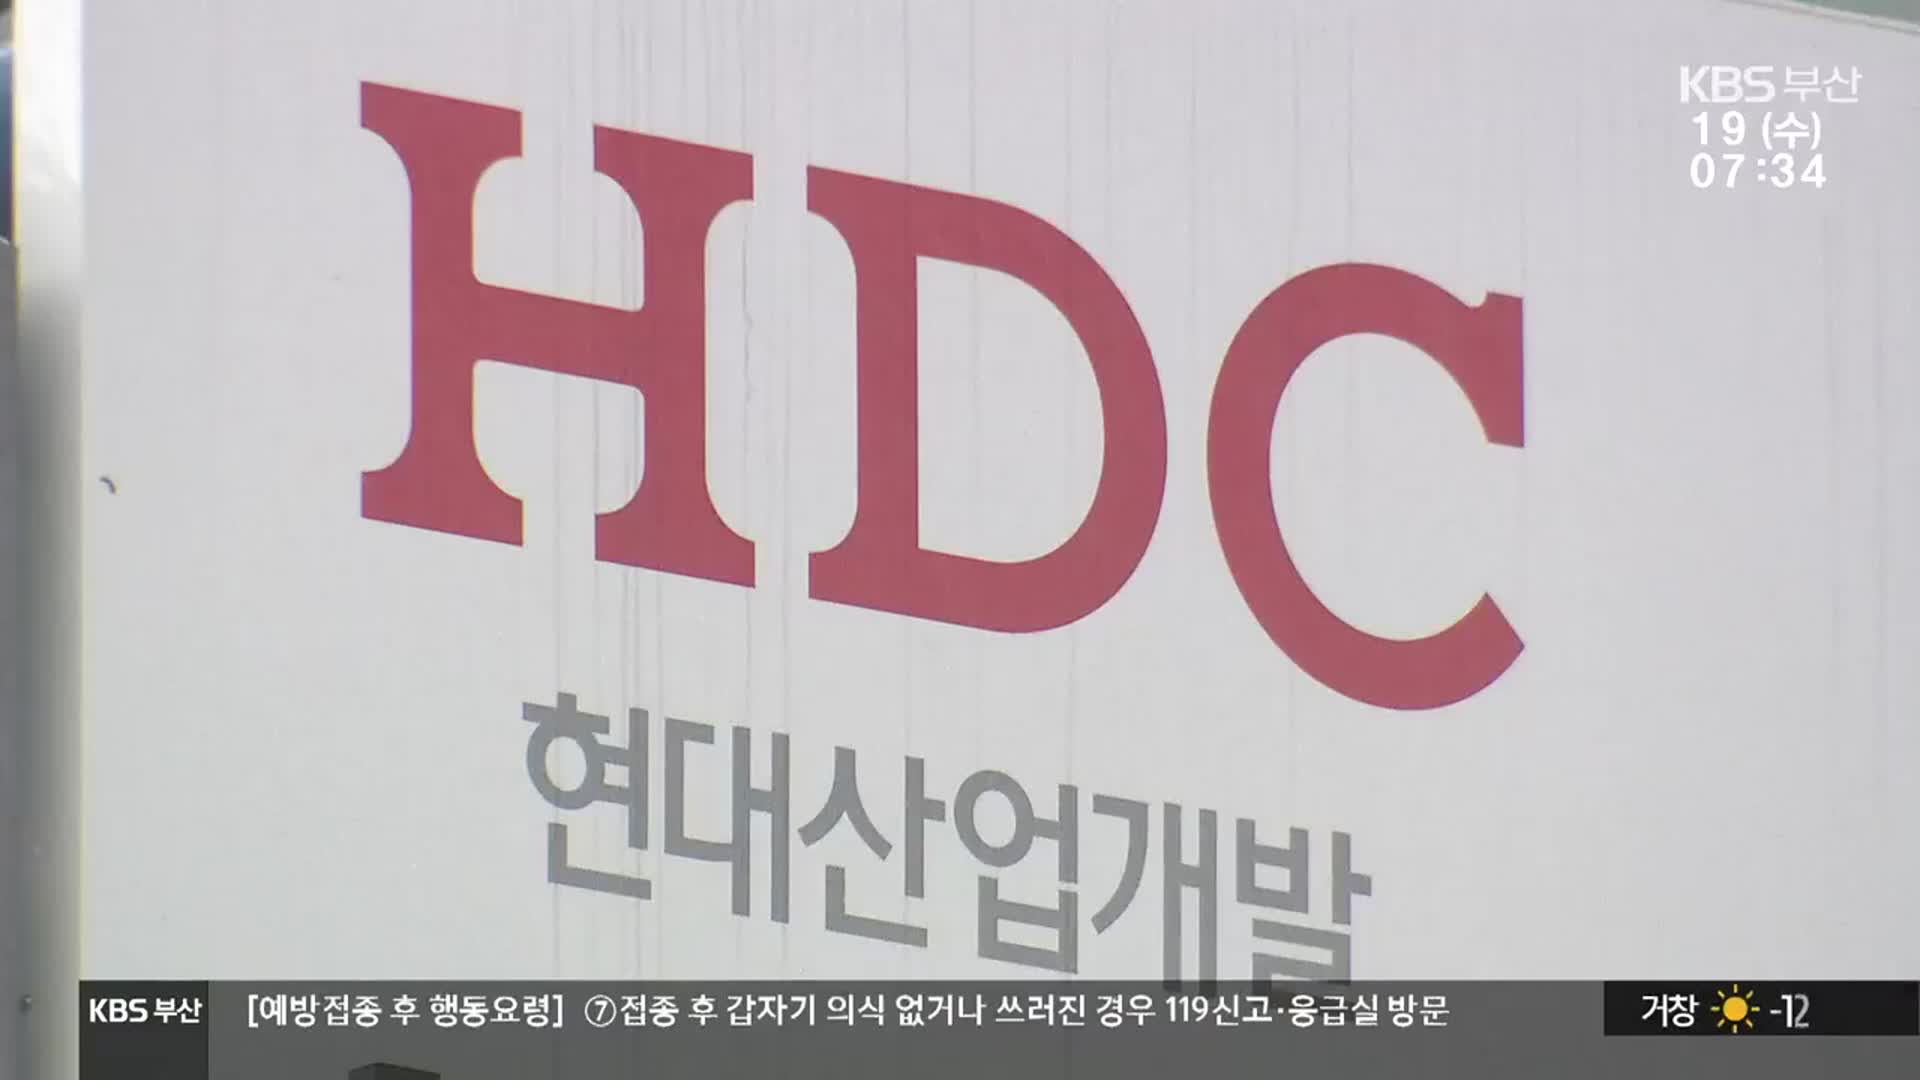 부산 HDC 재개발 현장 ‘부글부글’…계약해지 주장도